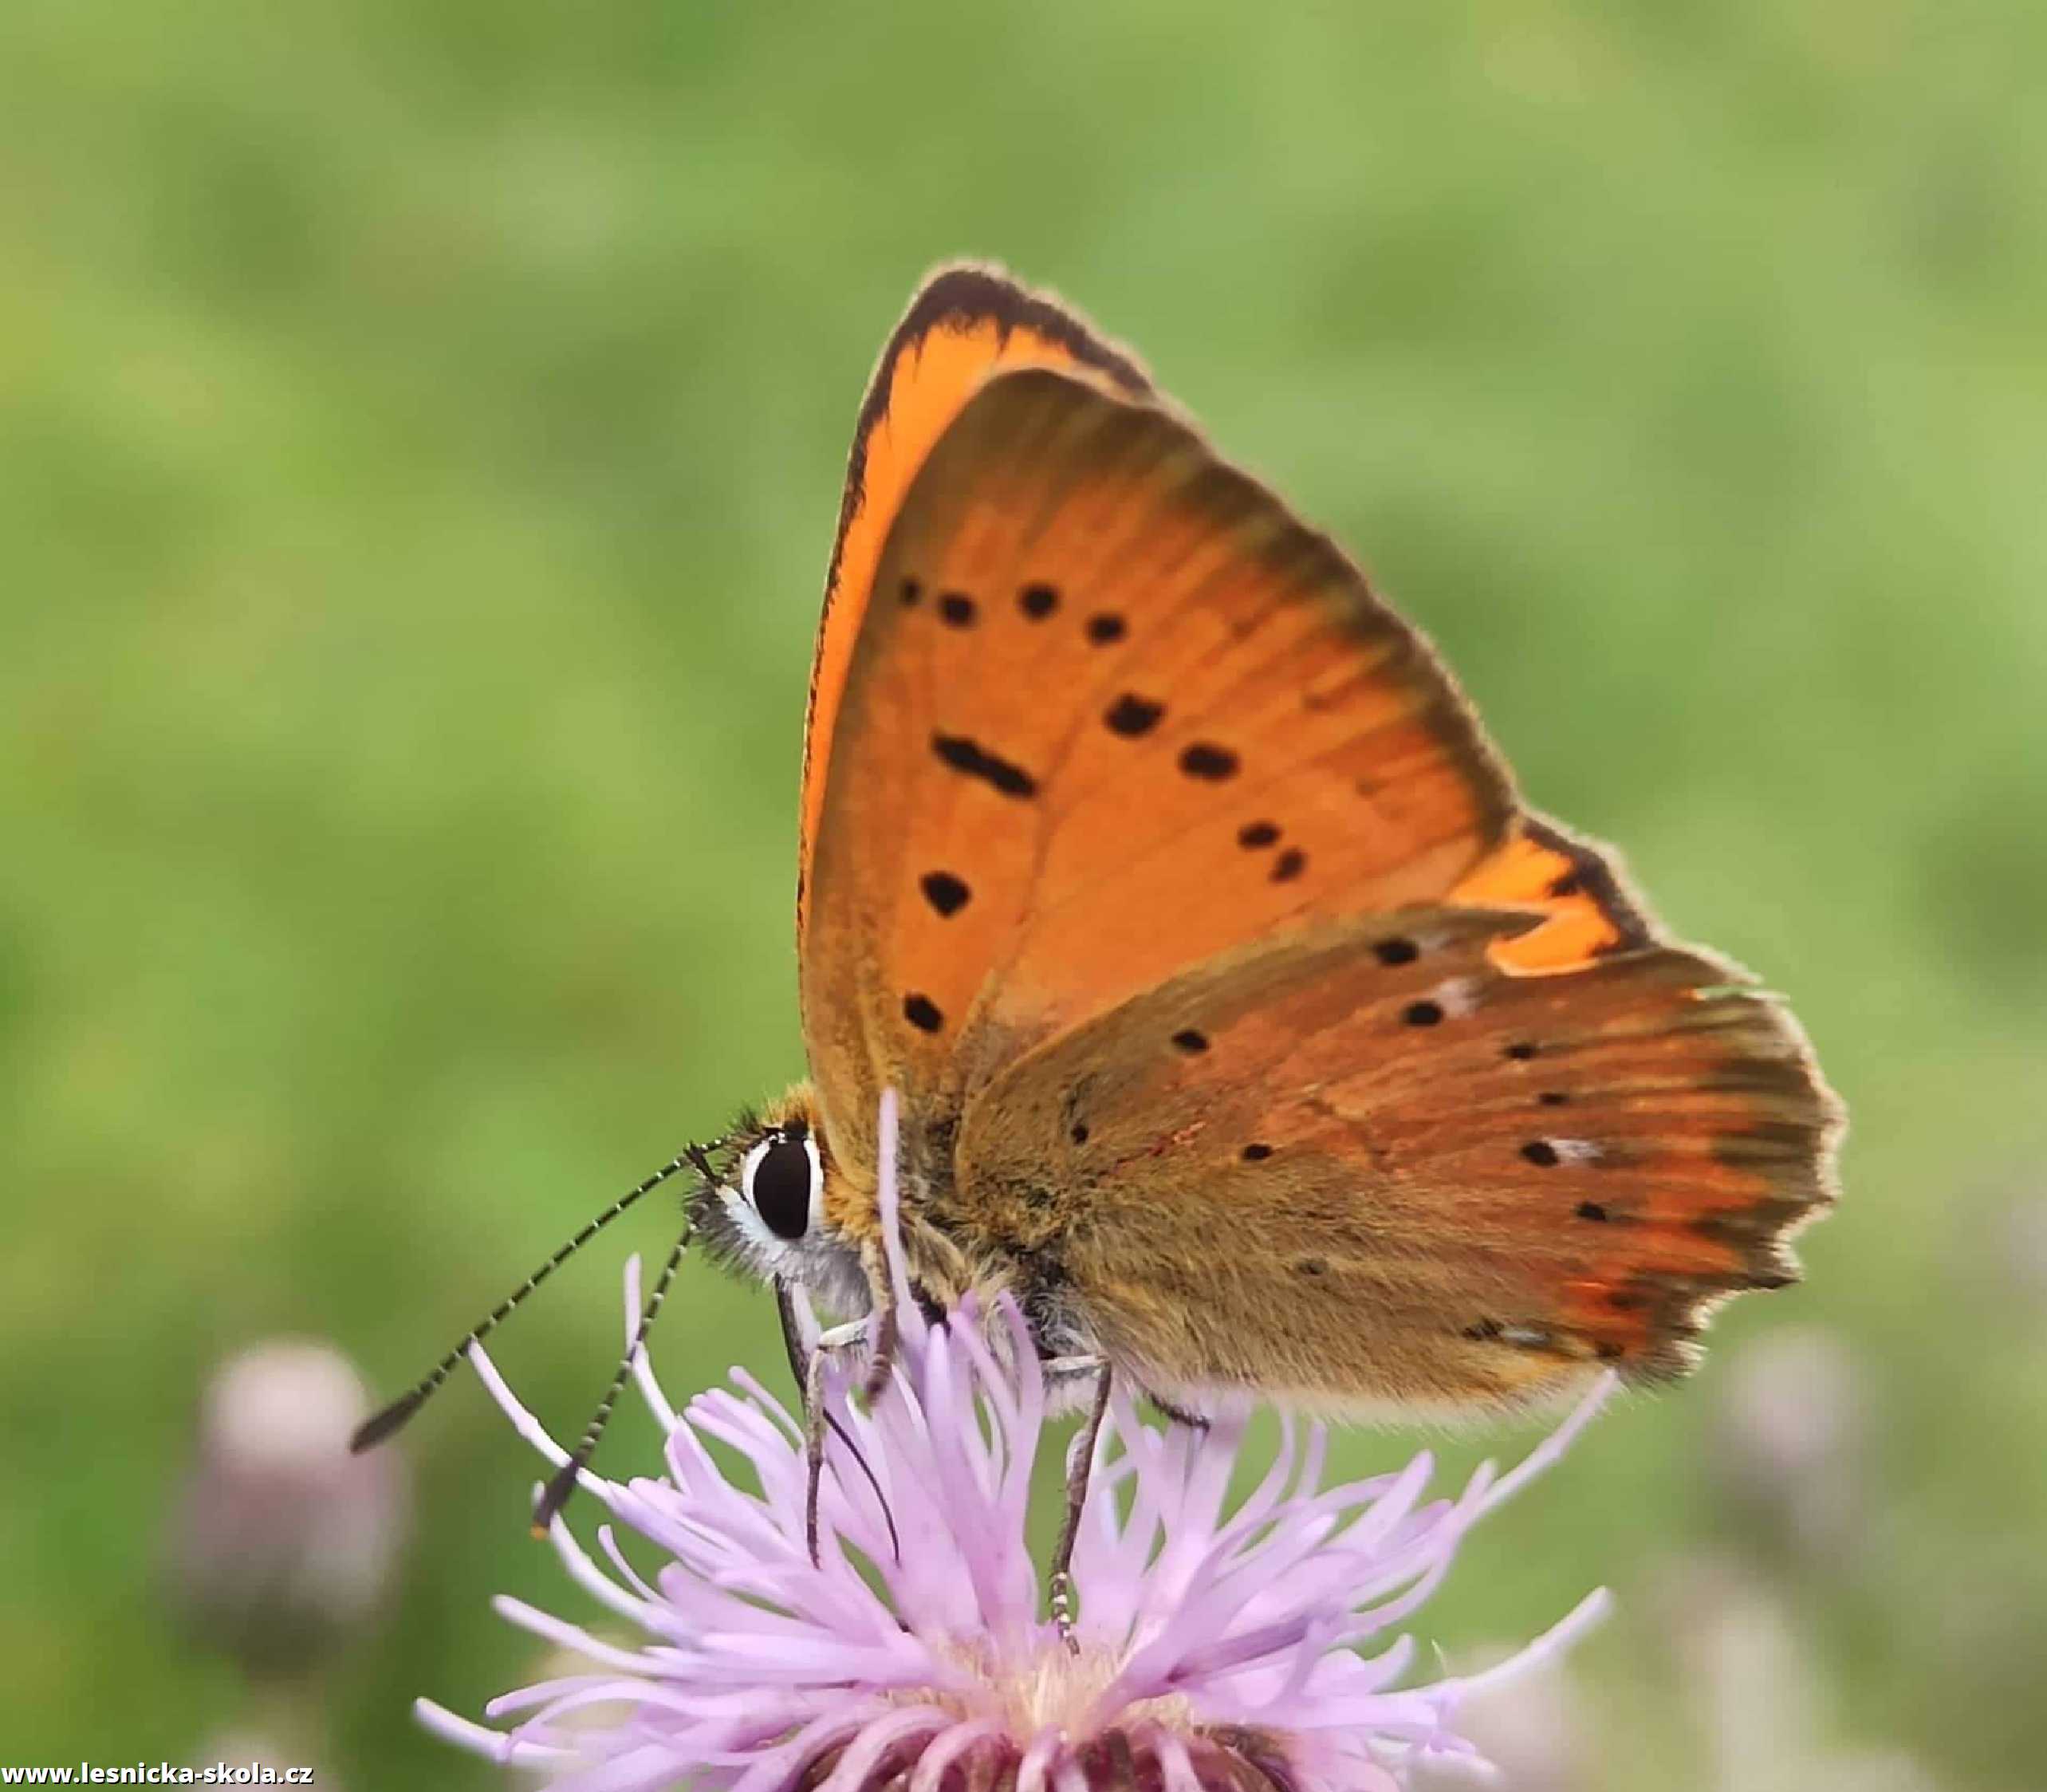 Krása hmyzího světa - Foto Adriana Simandlová 0922 (3)